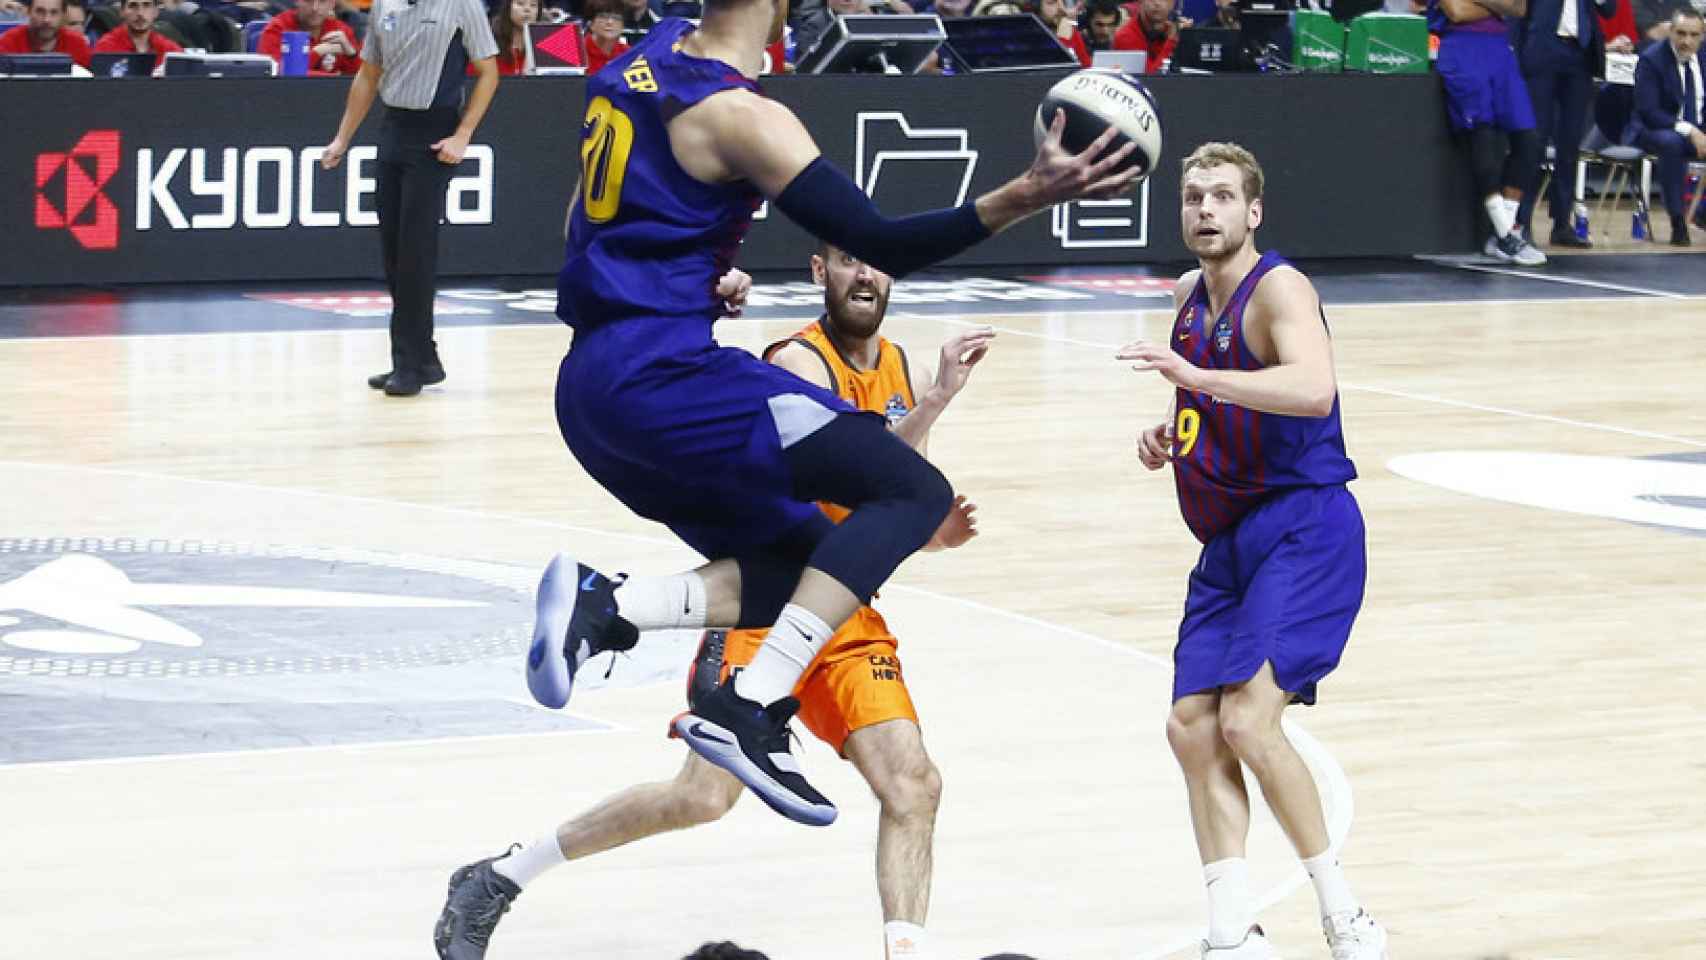 Barcelona Lassa - Valencia Basket de la Copa del Rey de baloncesto disputada en Madrid